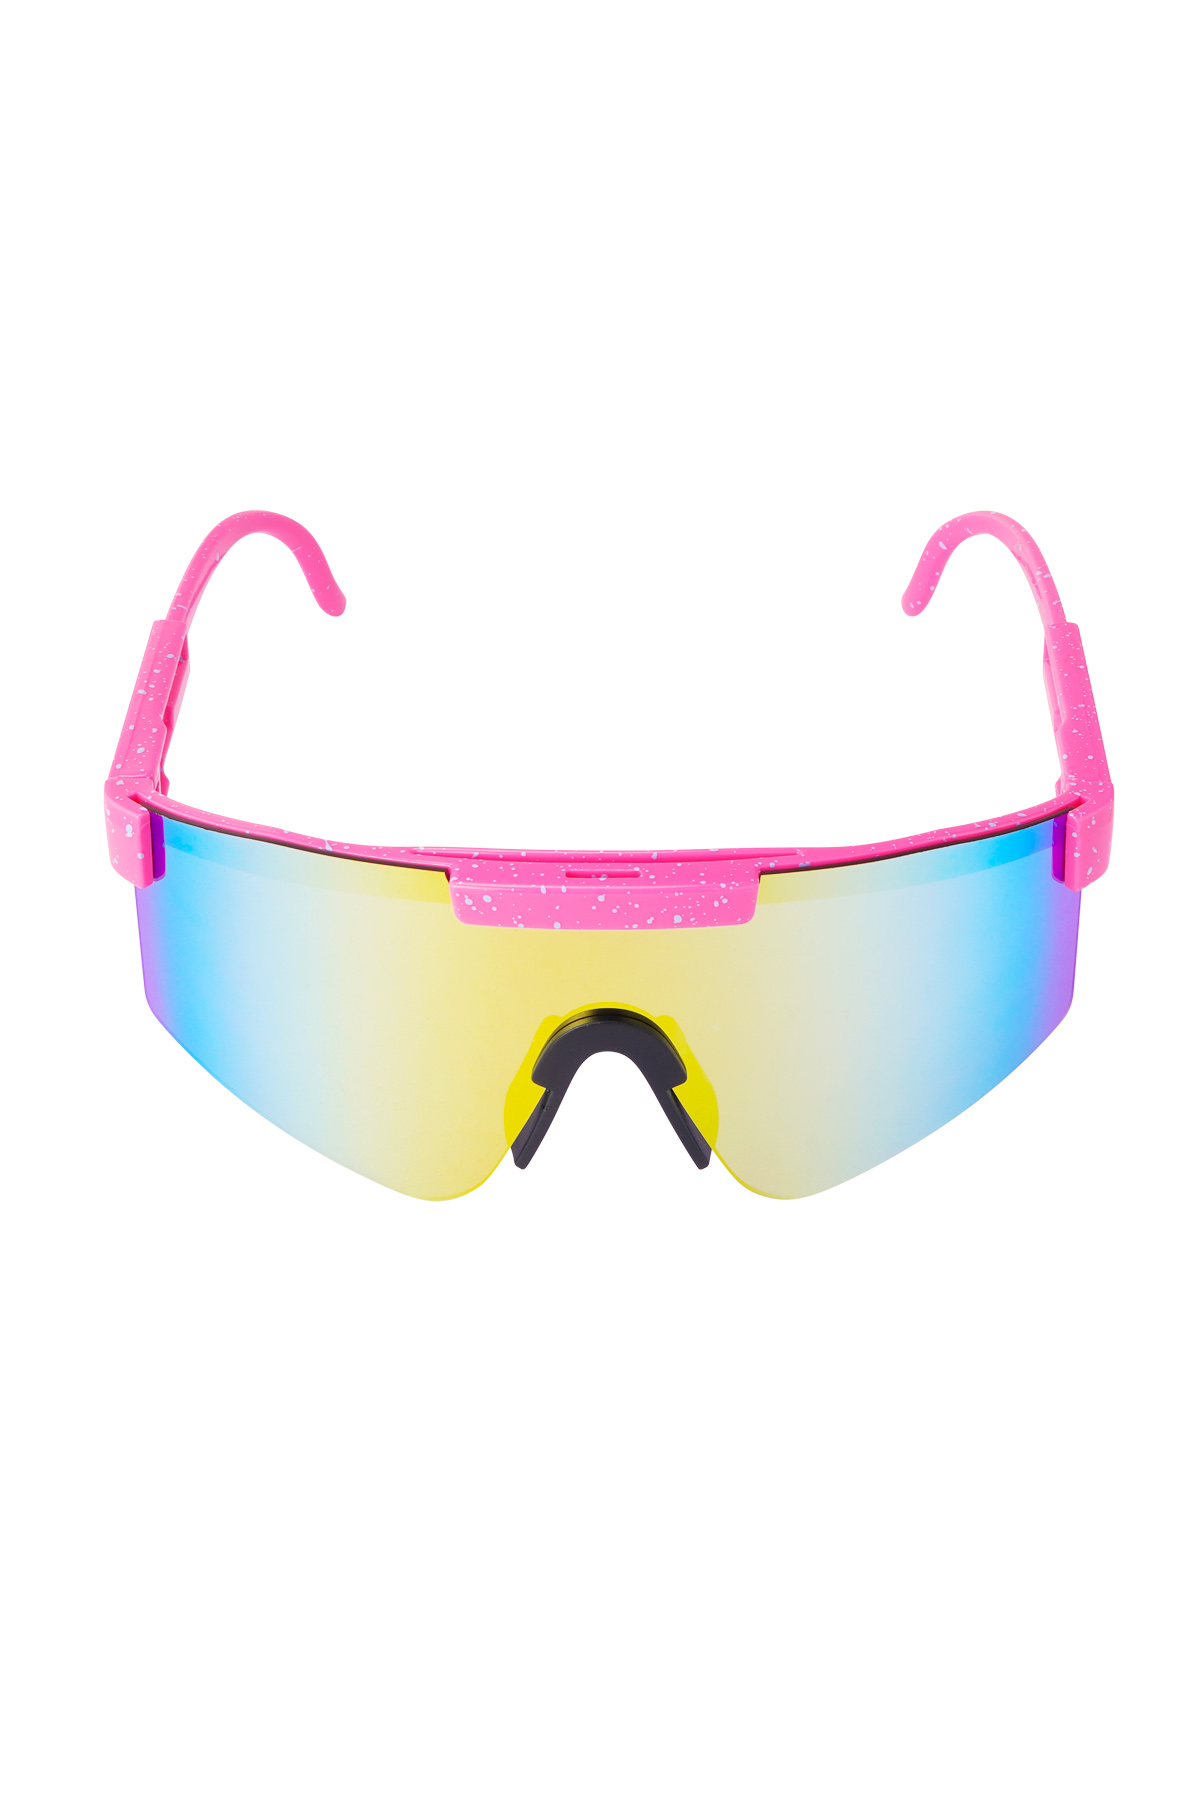 Gafas de sol con lentes de colores estampados - rosa h5 Imagen6